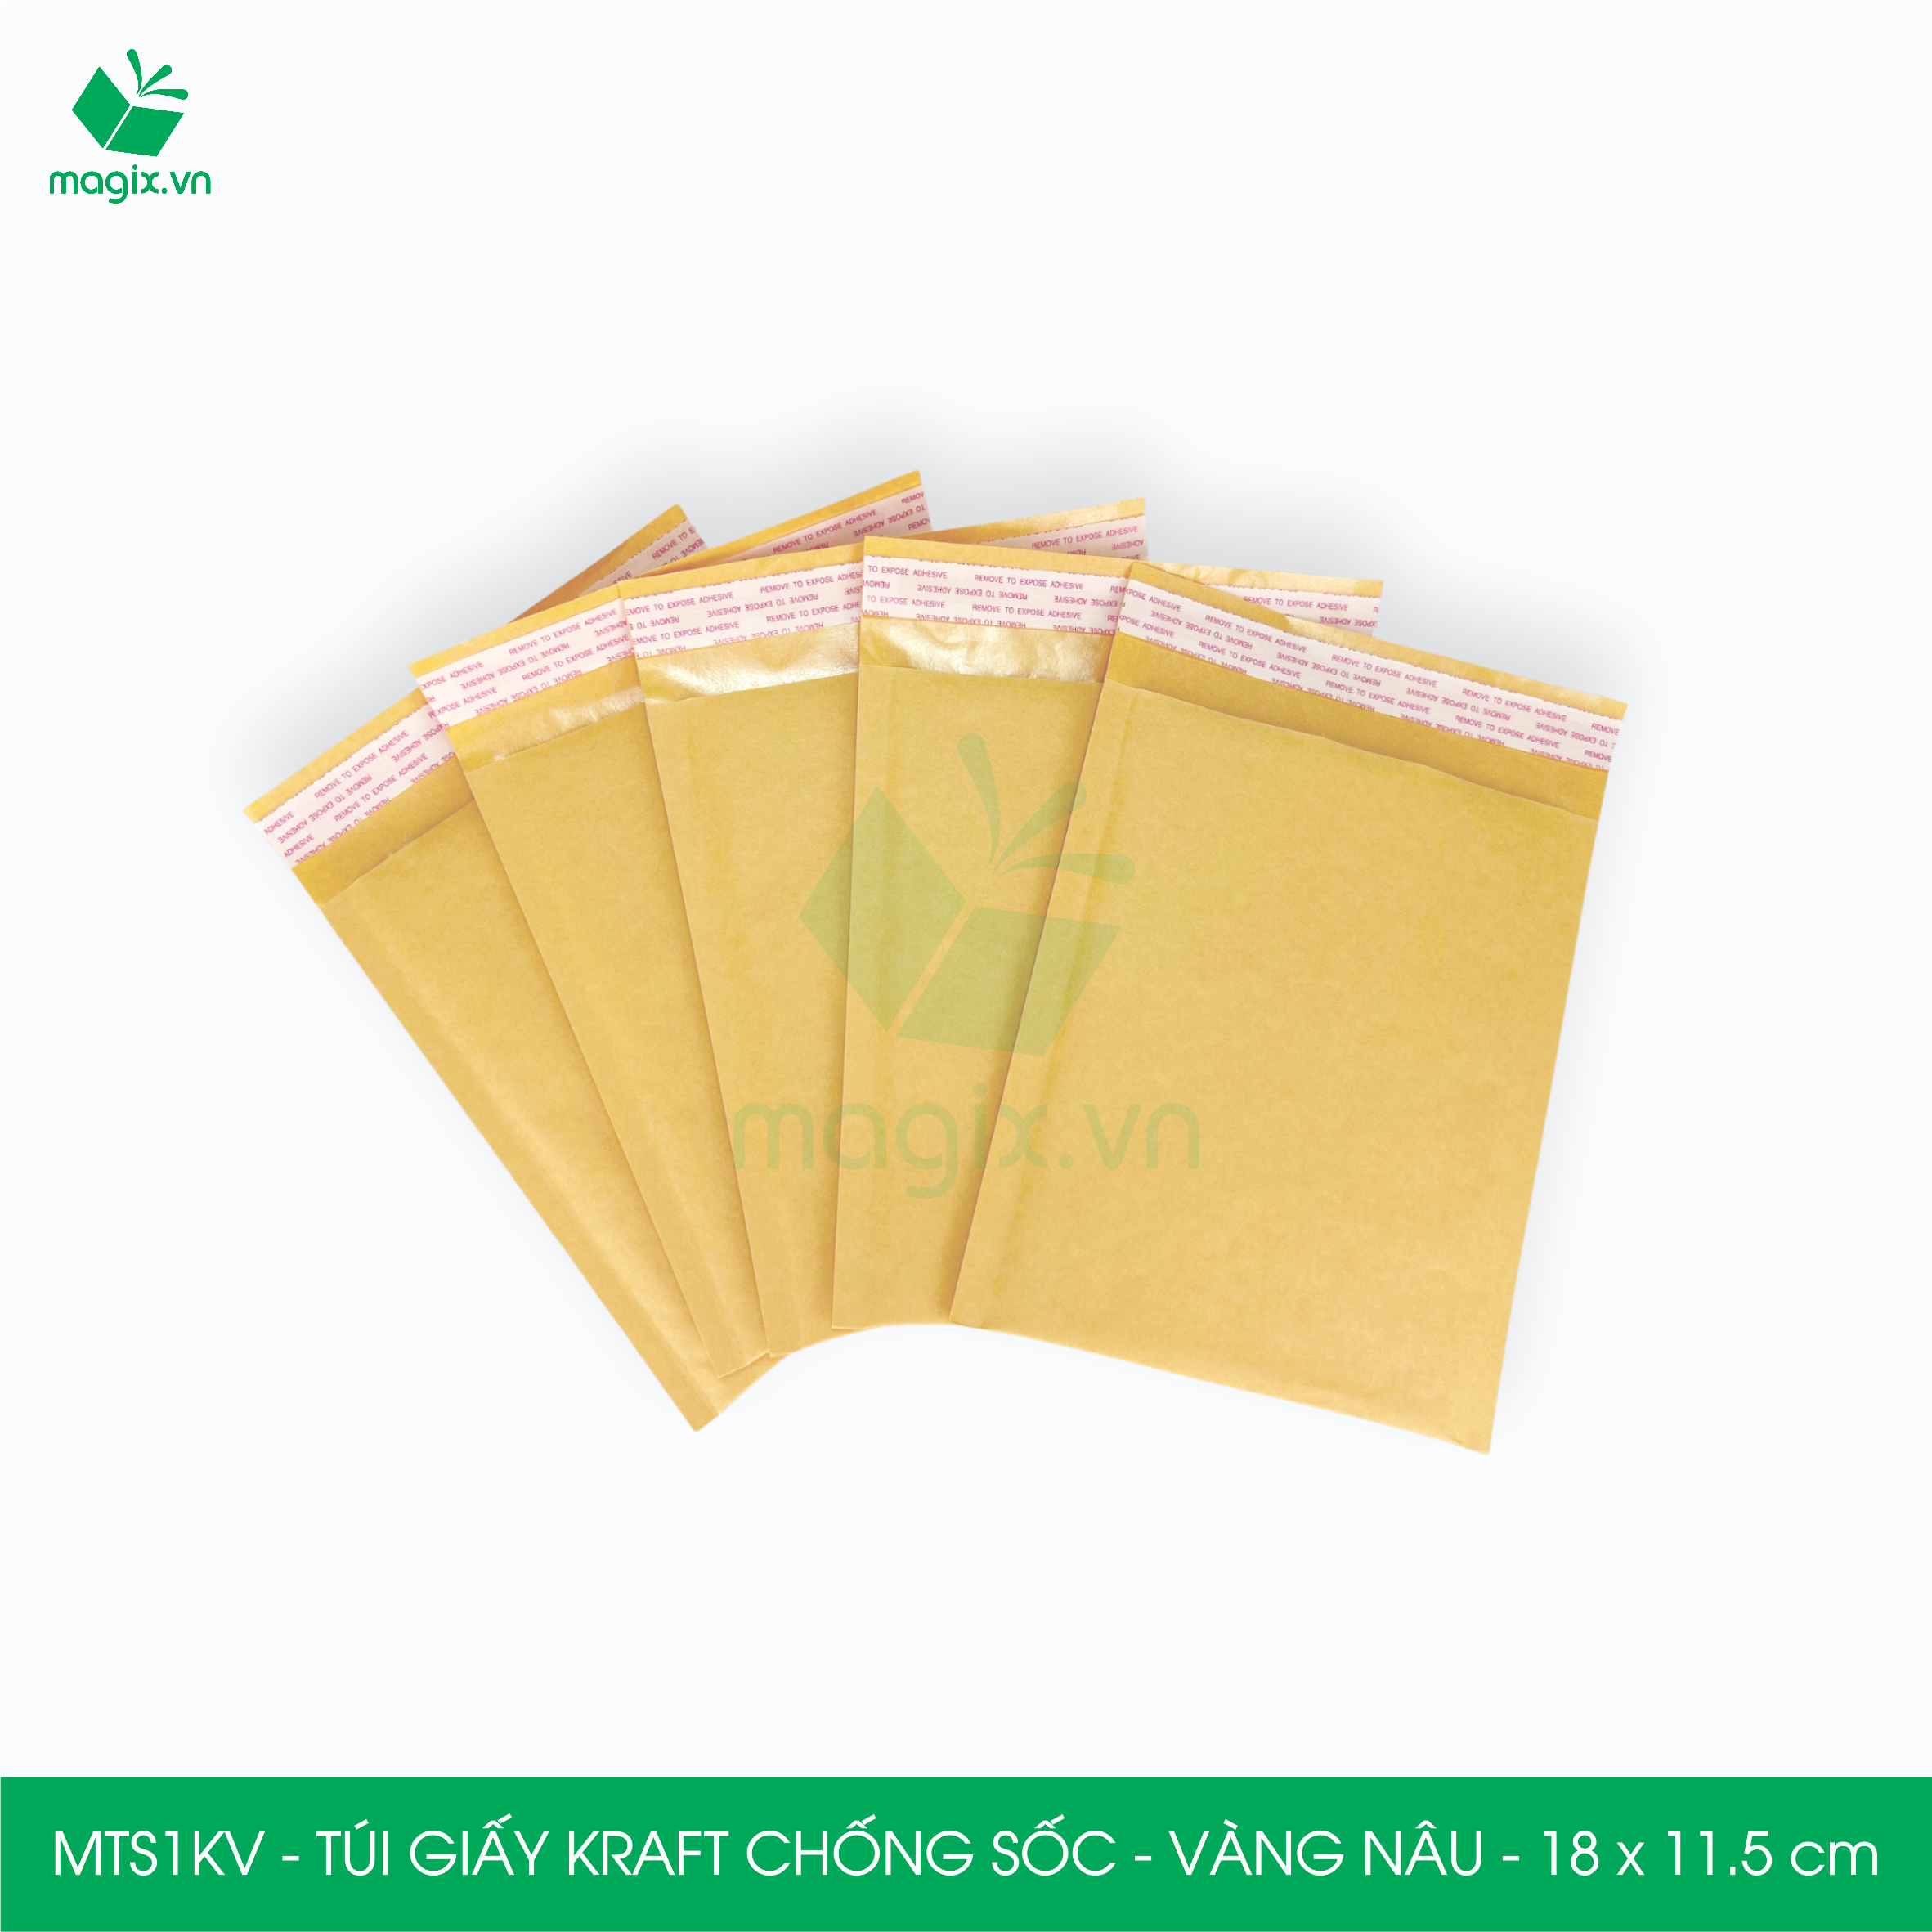 MTSKV - 25 túi giấy Kraft bọc bóng khí gói hàng chống sốc màu vàng nâu - NHIỀU KÍCH THƯỚC